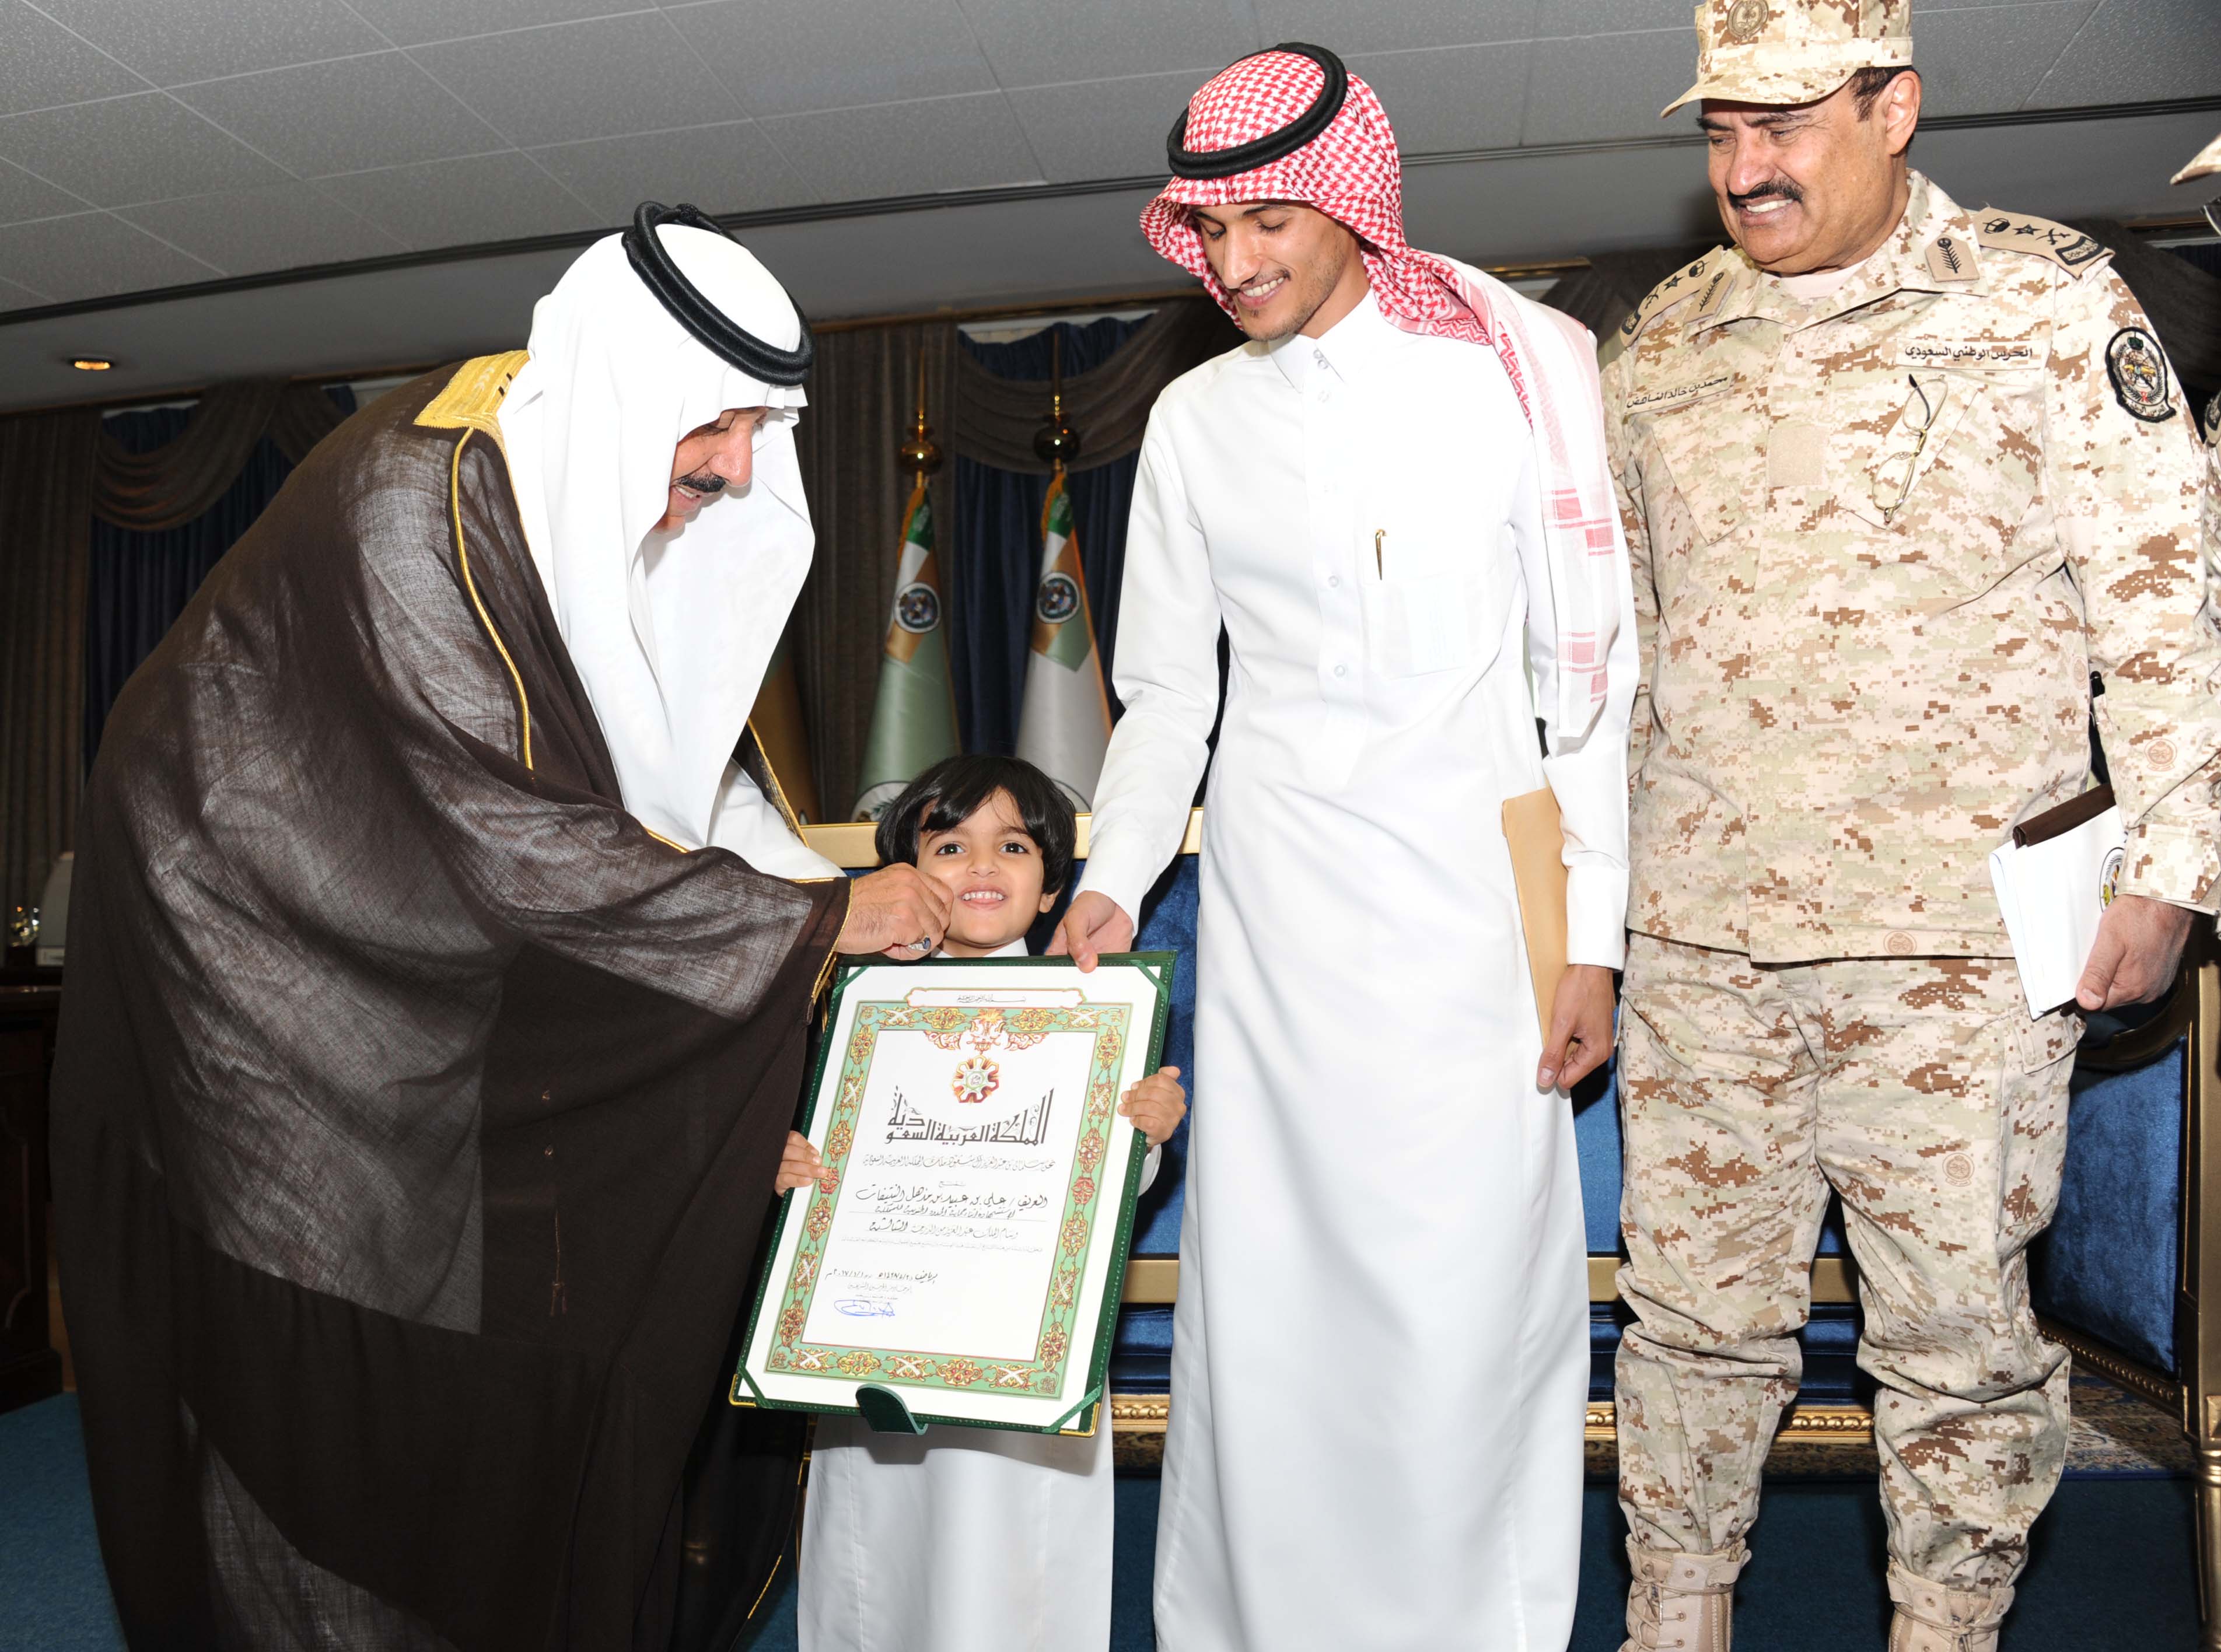 بالصور.. وزير الحرس الوطني يقلد ذوي شهداء الواجب وسام الملك عبدالعزيز